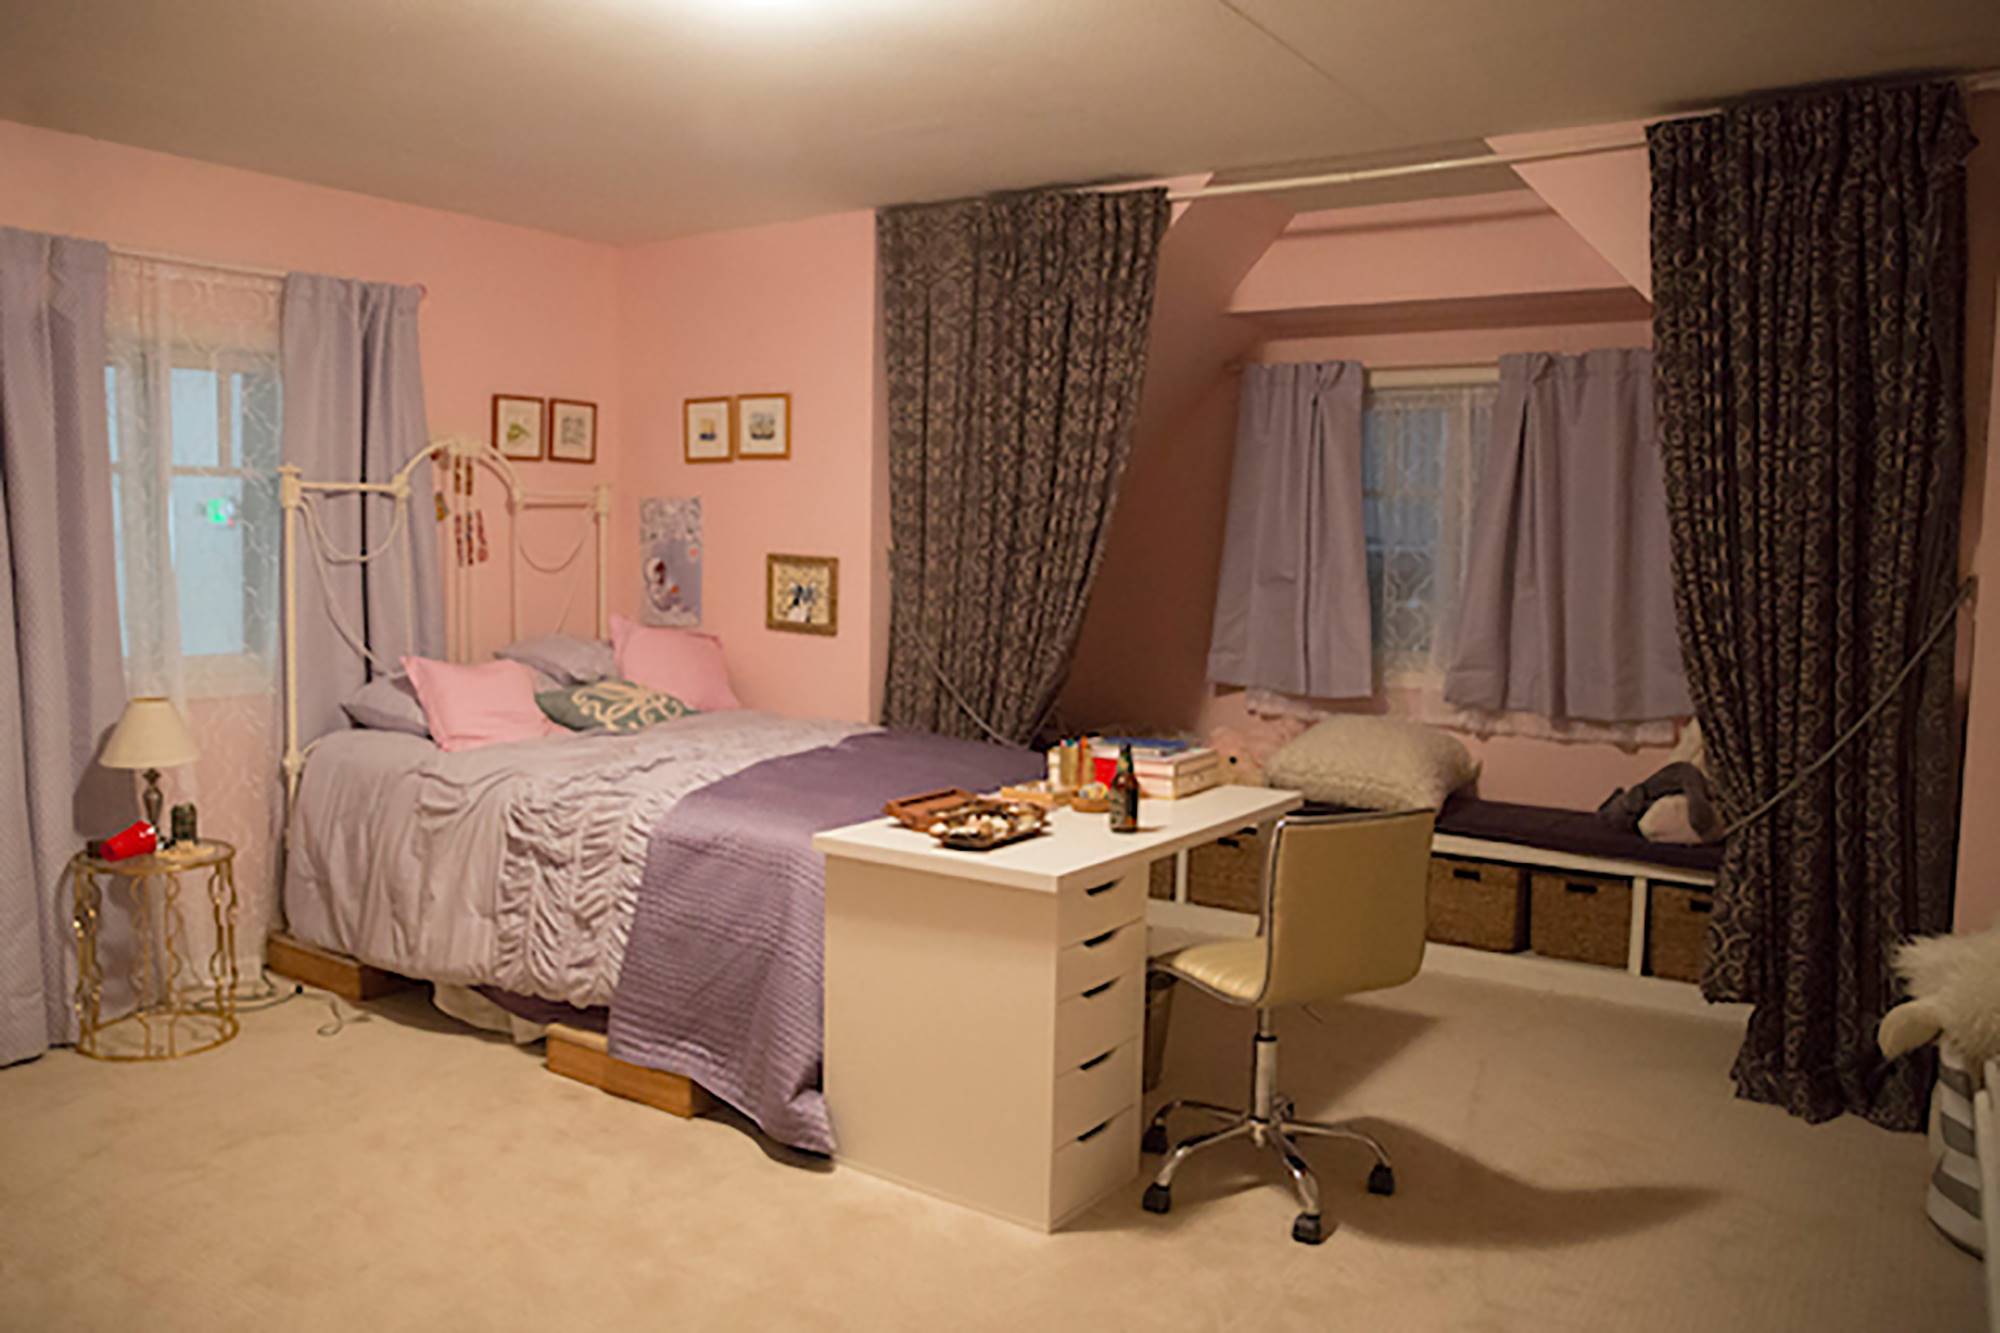 Habitación de Jessica en la serie 'Por trece razones' decorada con muebles de Netflix